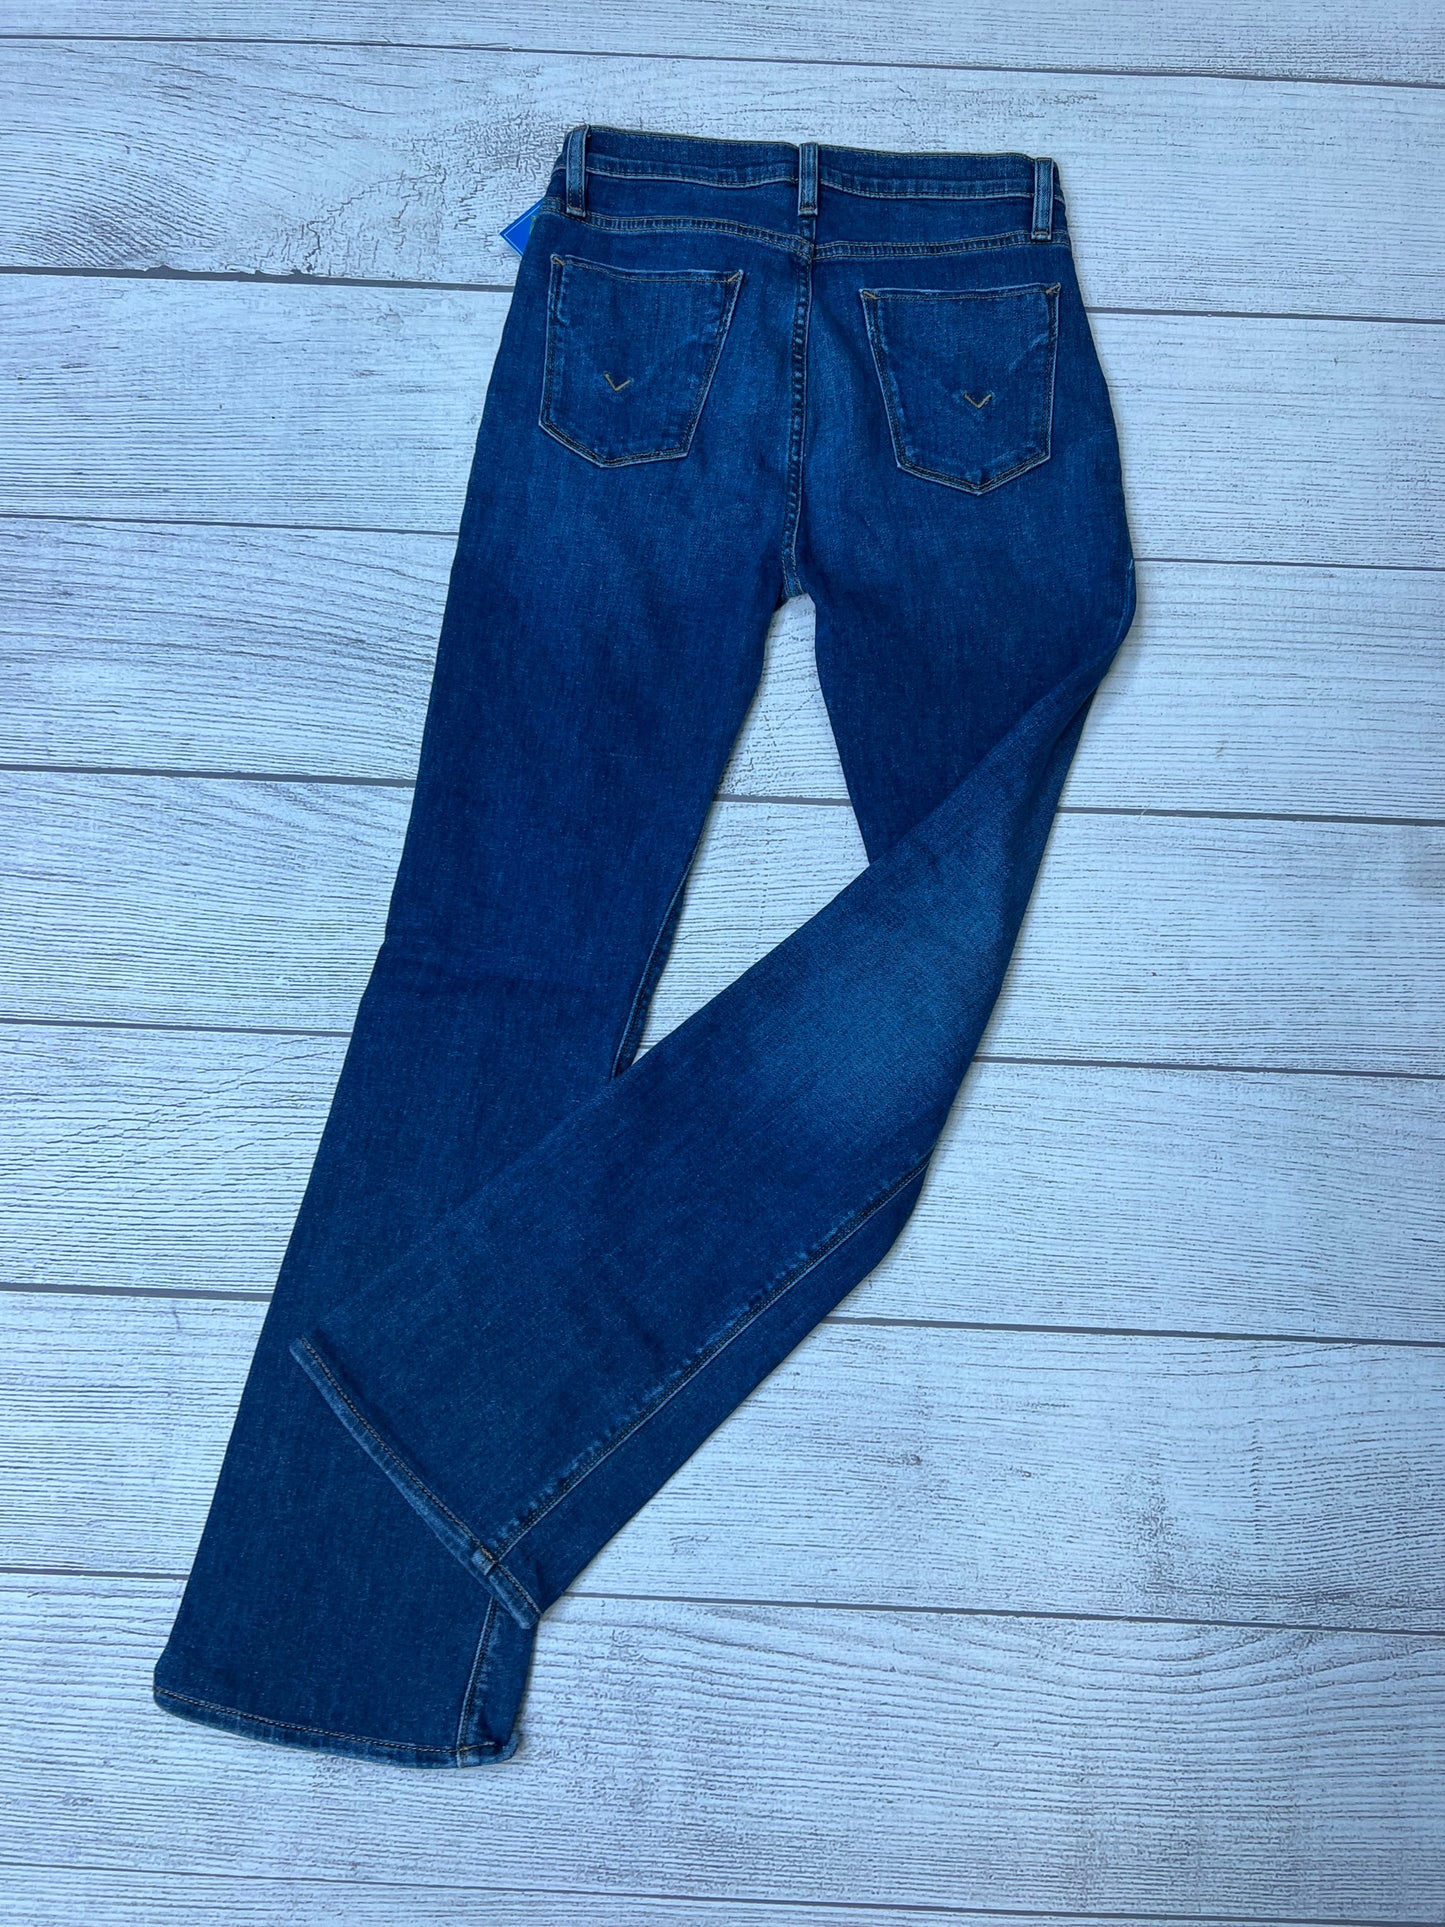 Denim Jeans Designer Hudson, Size 6